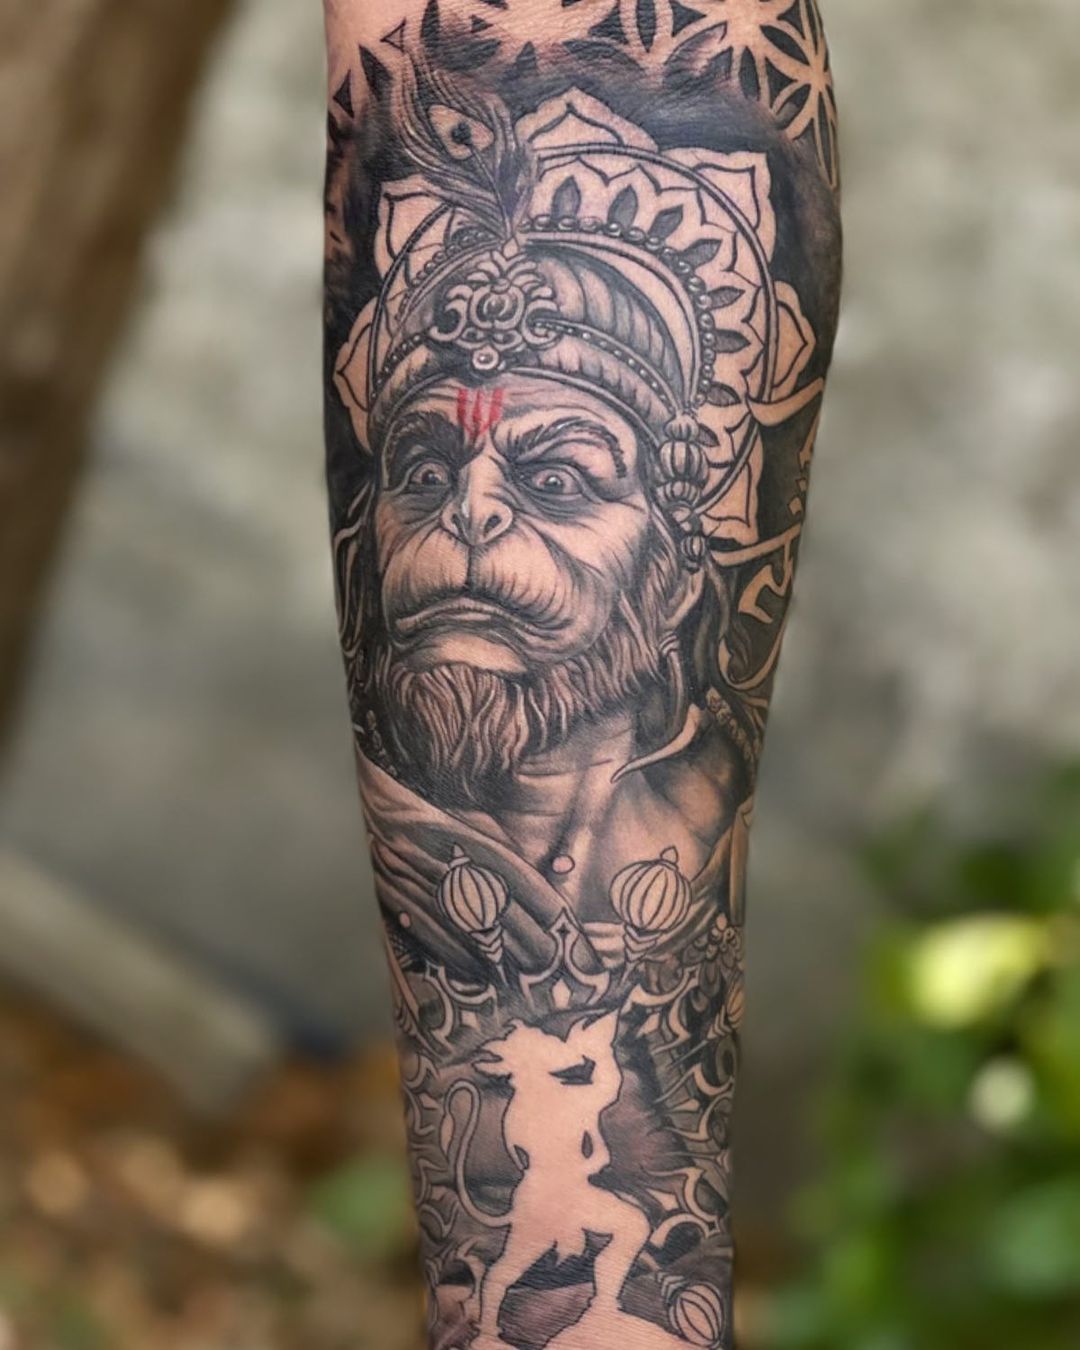 Hanuman | Krishna tattoo, Shiva tattoo design, Hanuman tattoo-nlmtdanang.com.vn